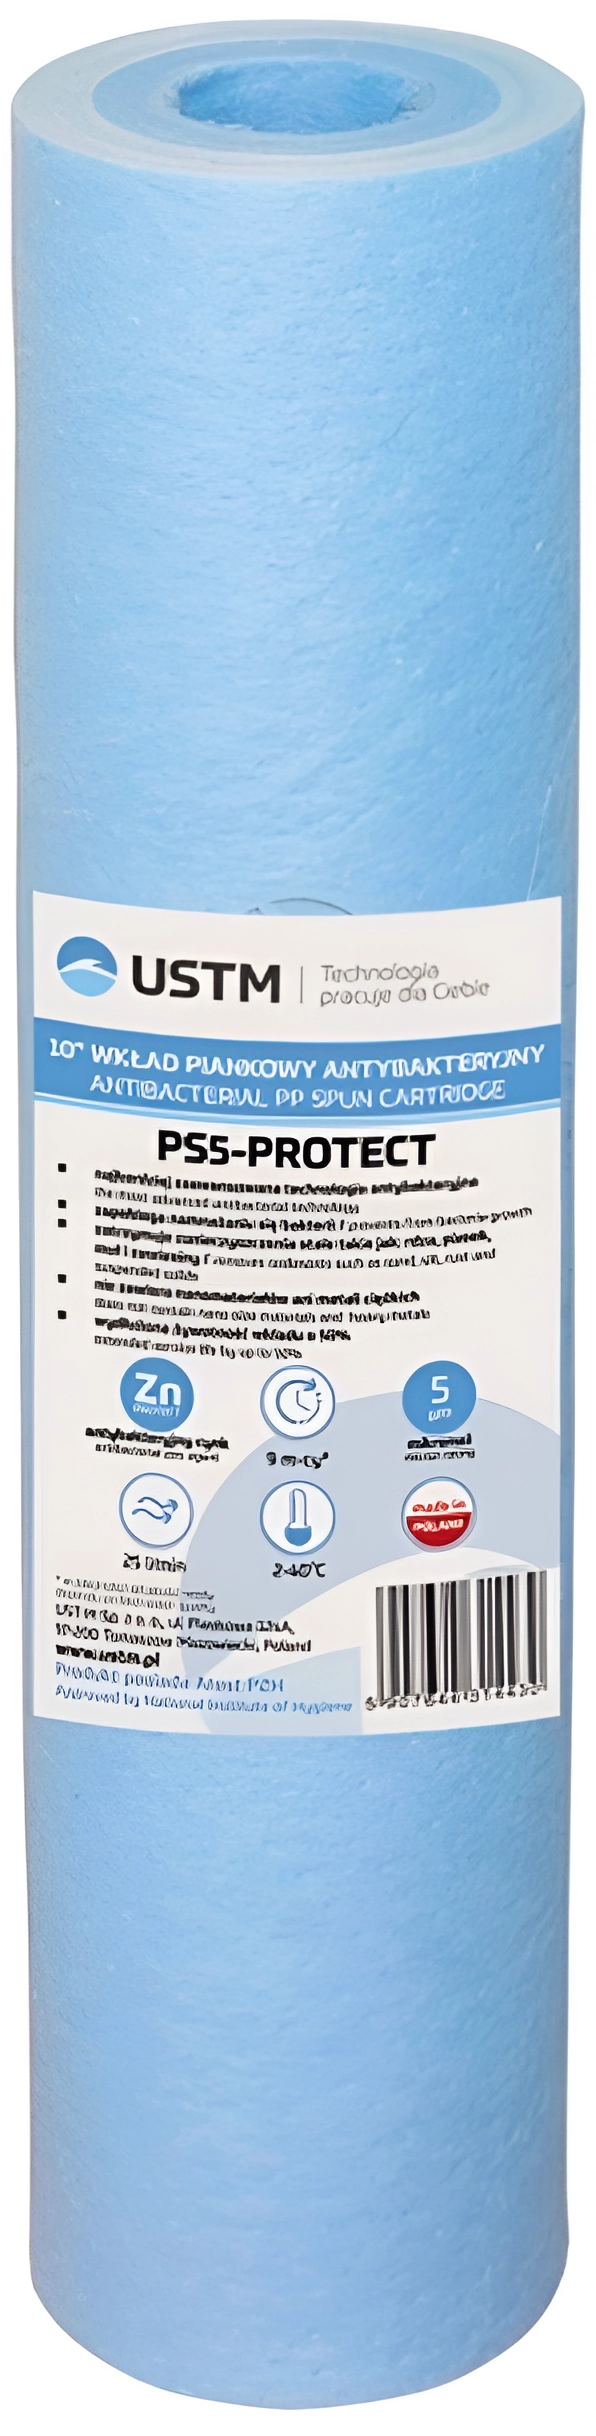 Картридж для проточного фильтра USTM PS-5-Protect 10"